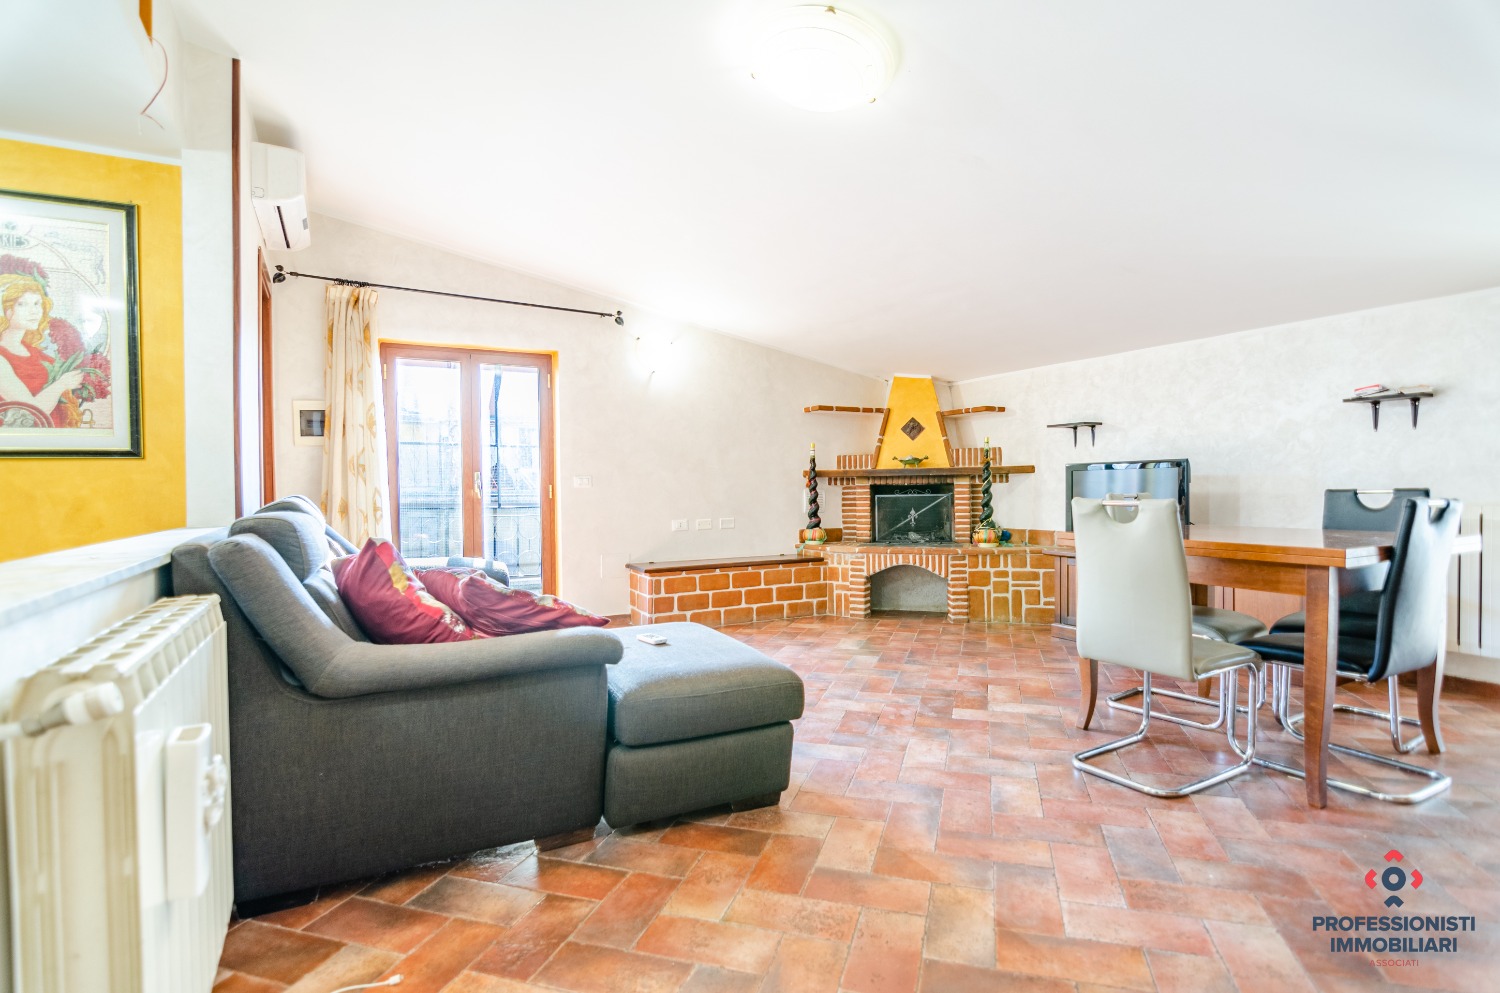 Appartamento in vendita a Mentana, 3 locali, prezzo € 83.000 | CambioCasa.it